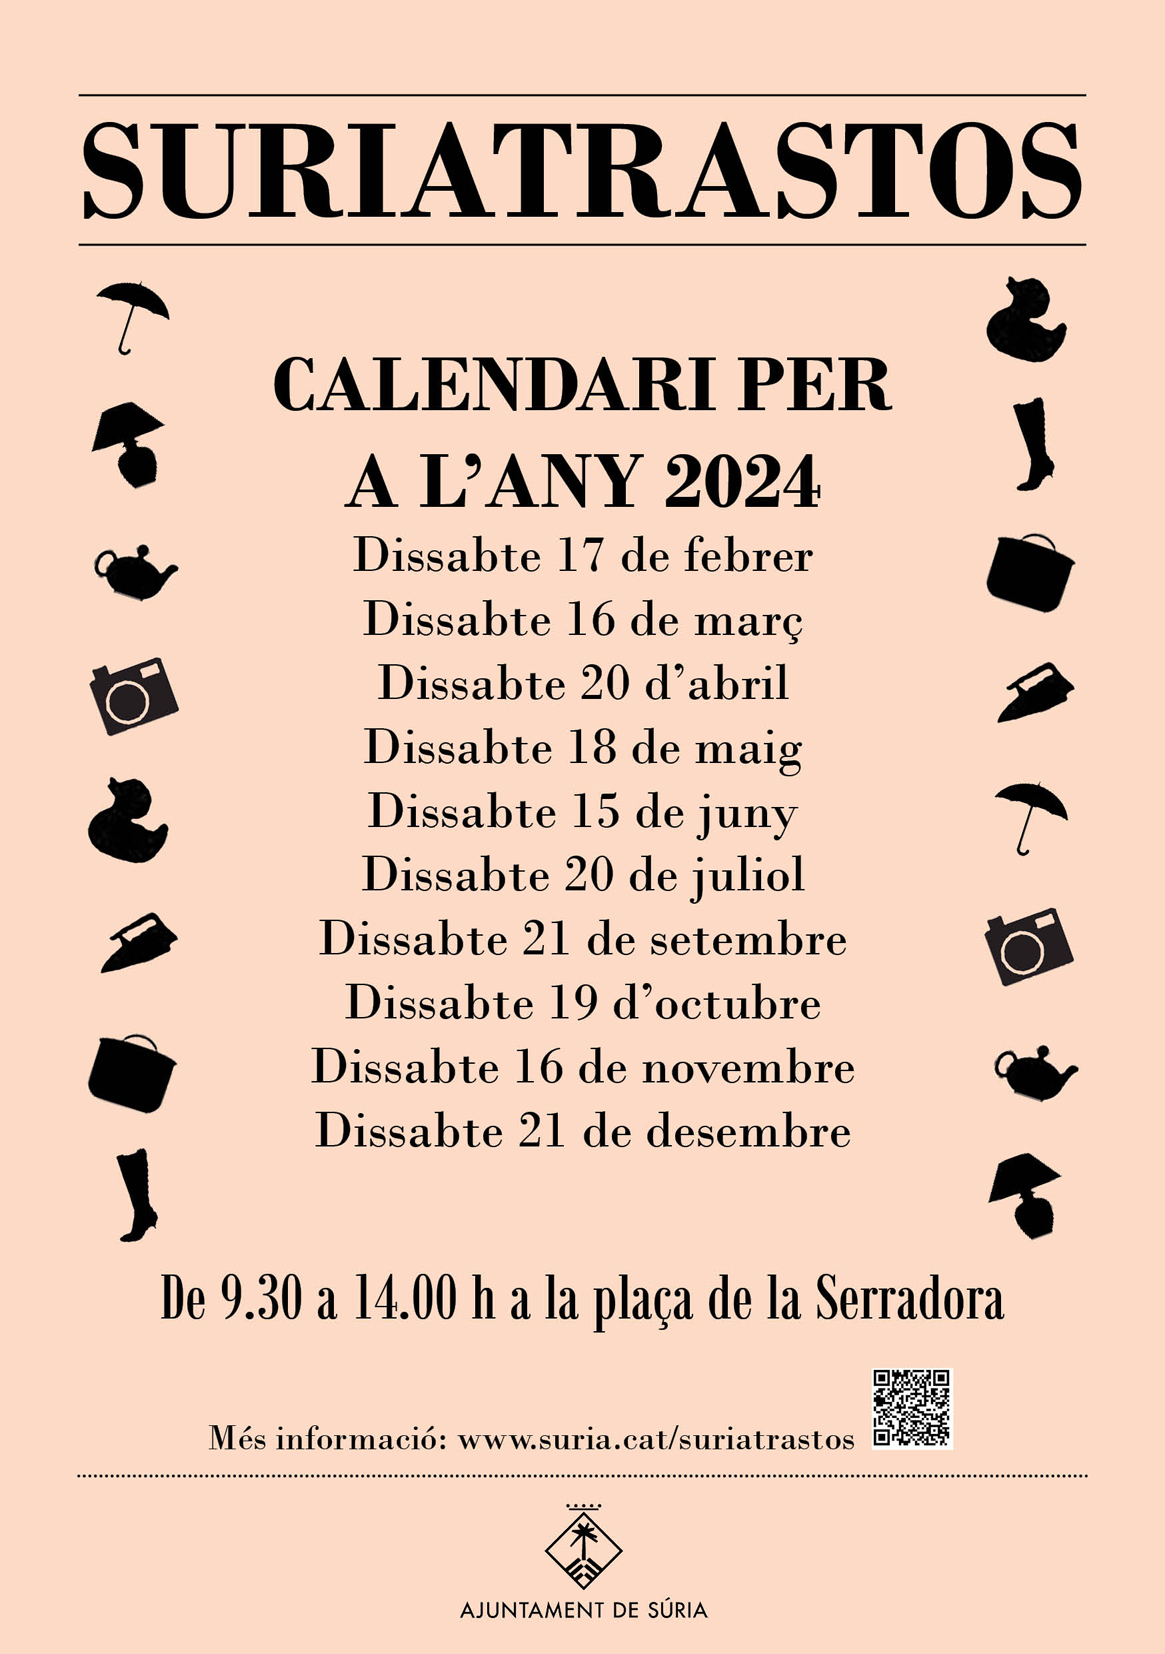 Calendari del mercat Suriatrastos per a l'any 2024.